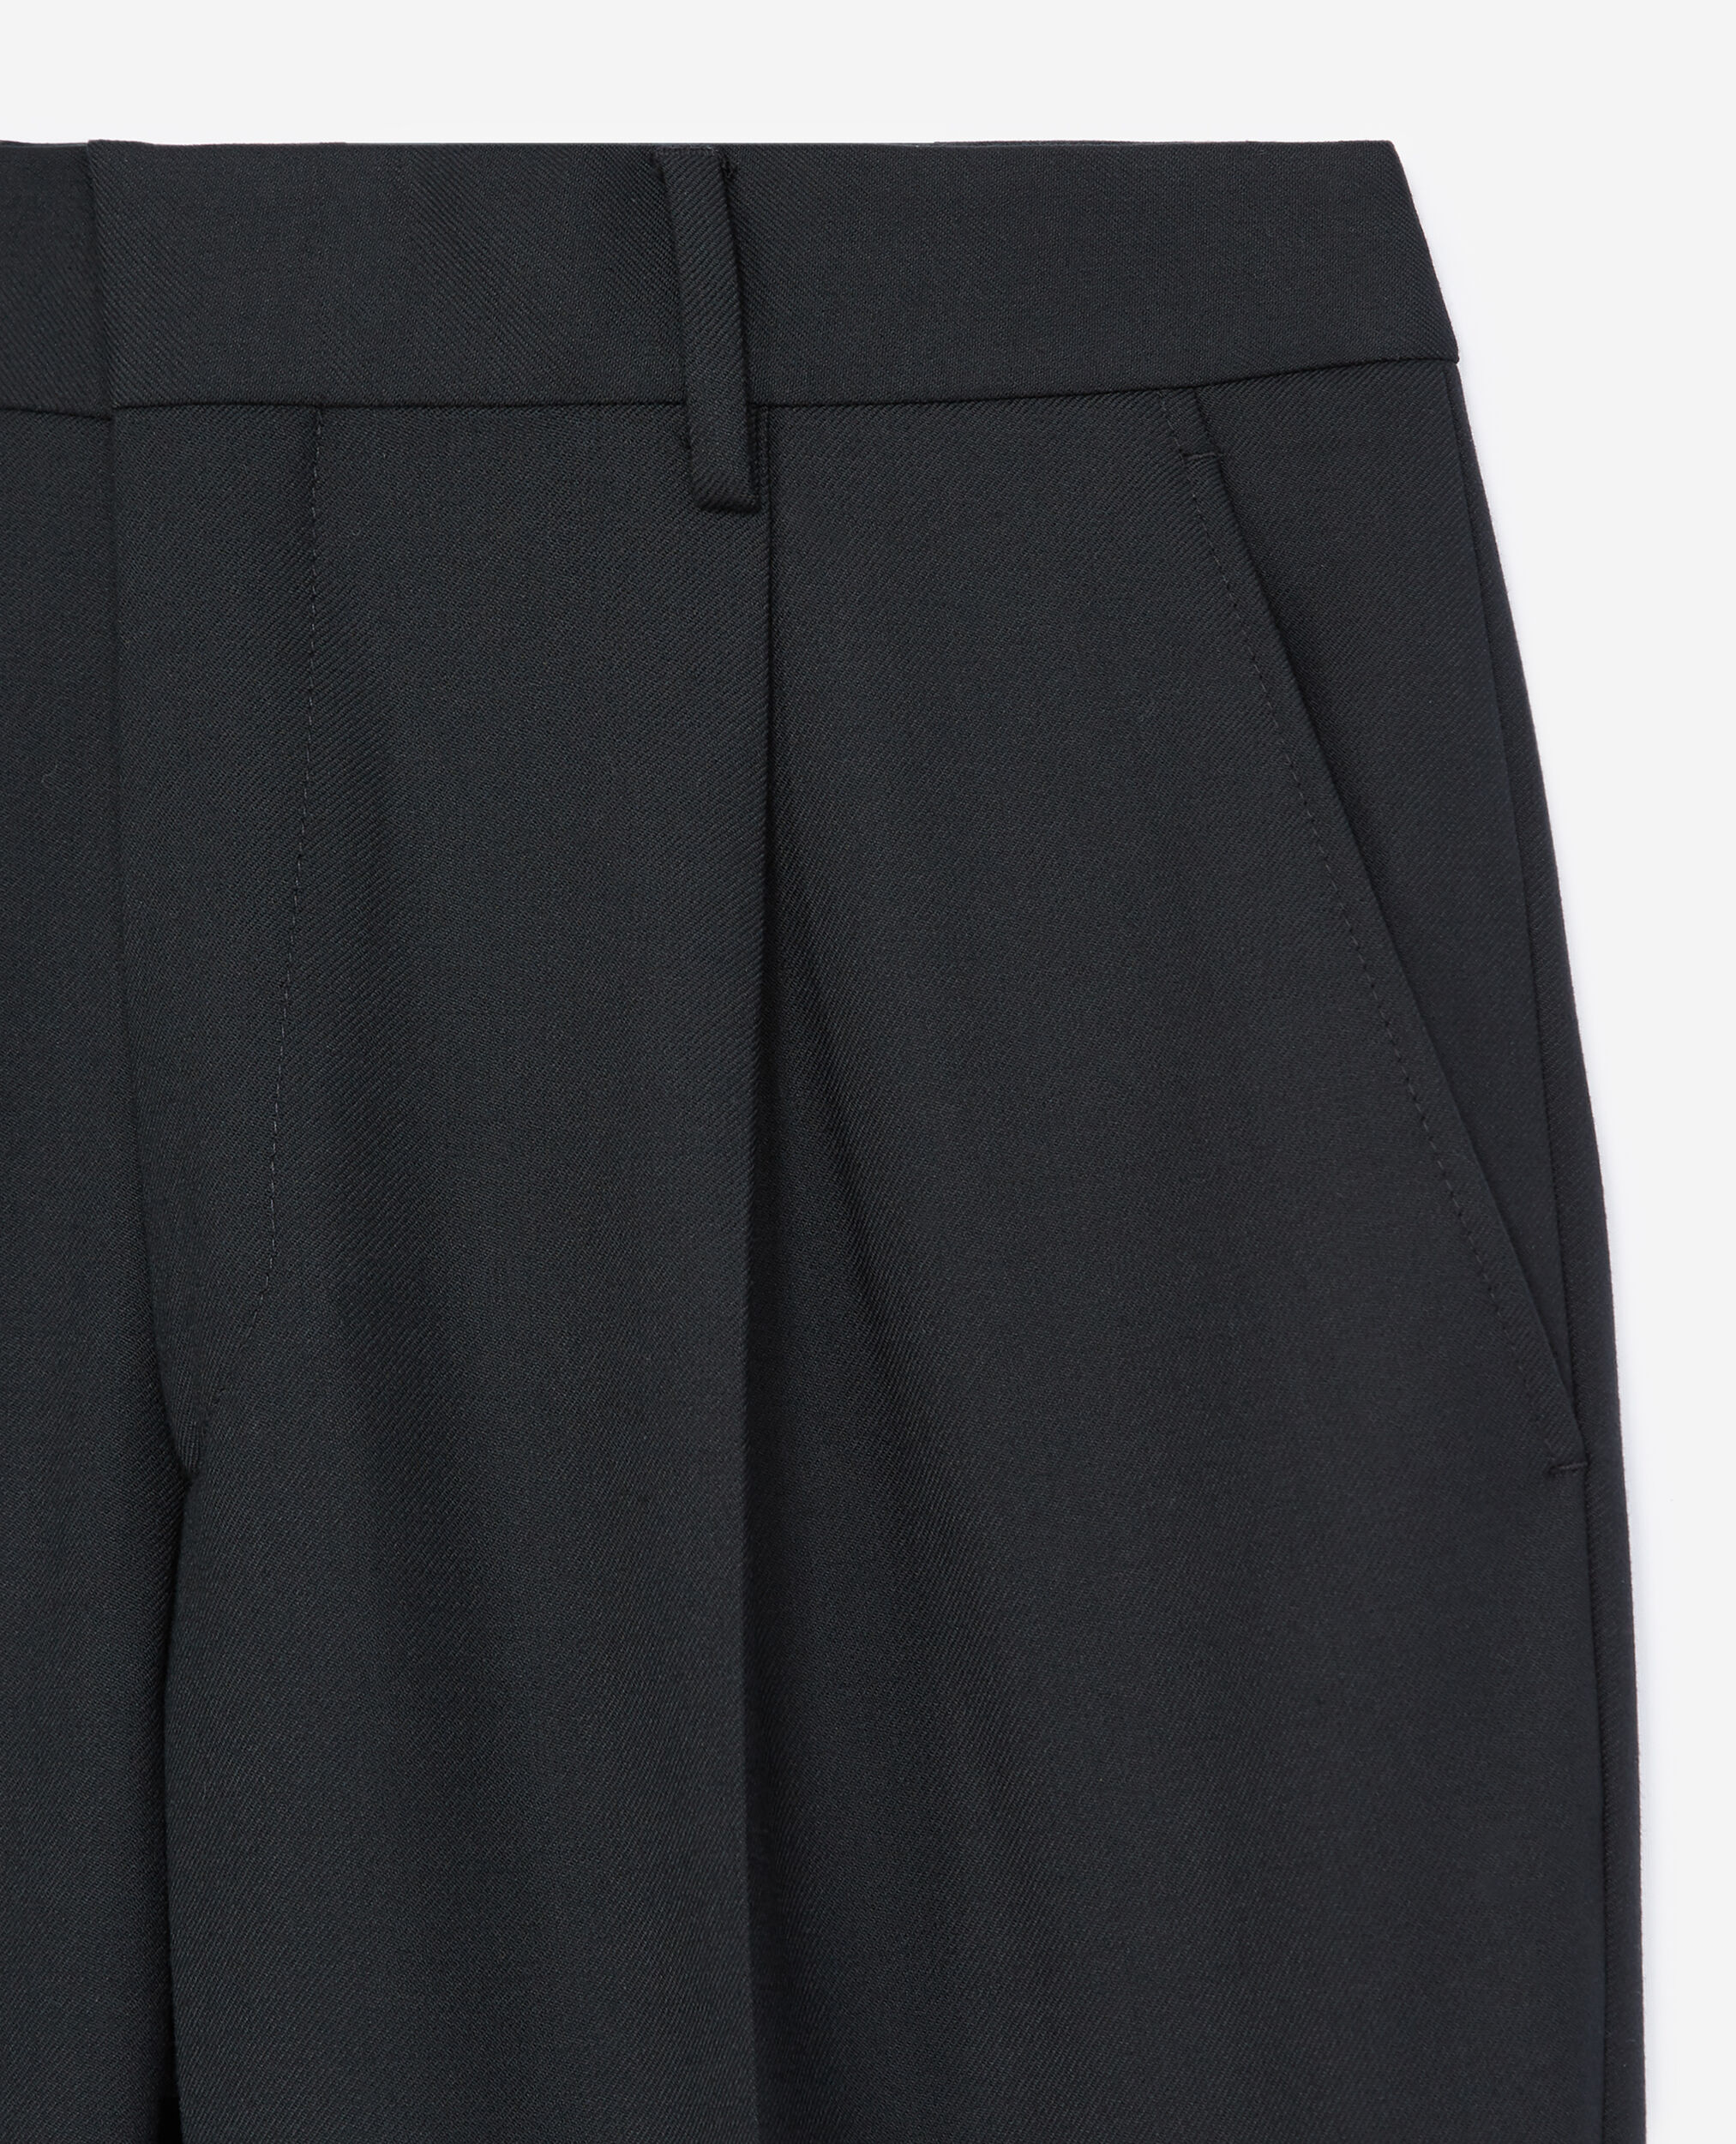 Pantalon laine noir, BLACK, hi-res image number null